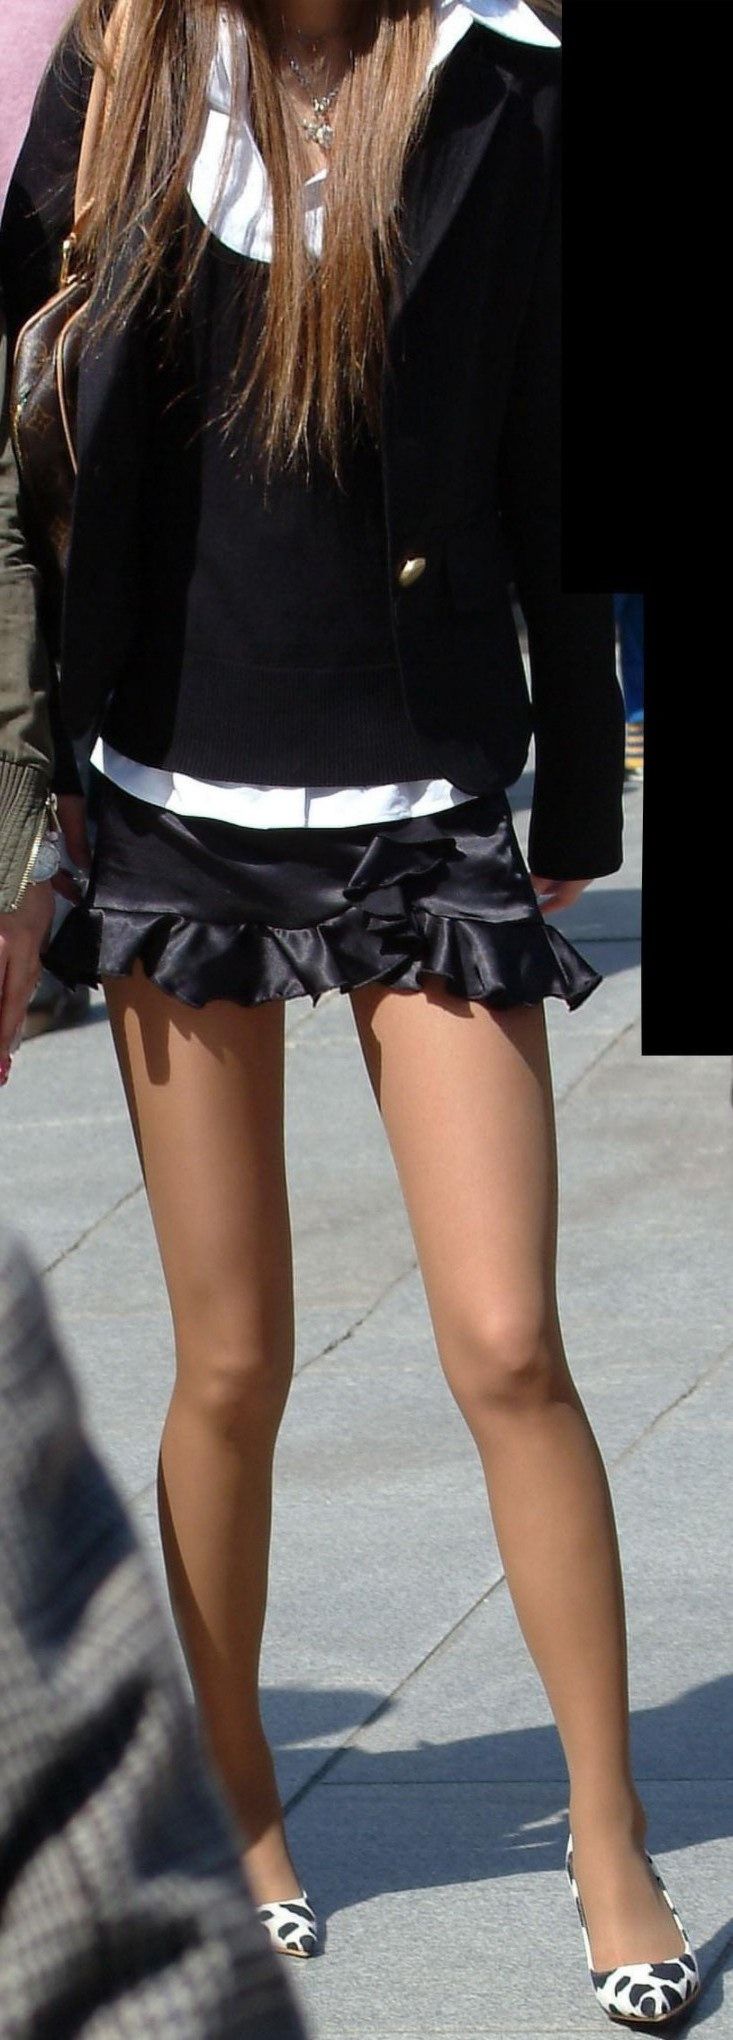 フリフリの可愛いスカートのパンチラが抜ける盗撮エロ画像50枚011枚目